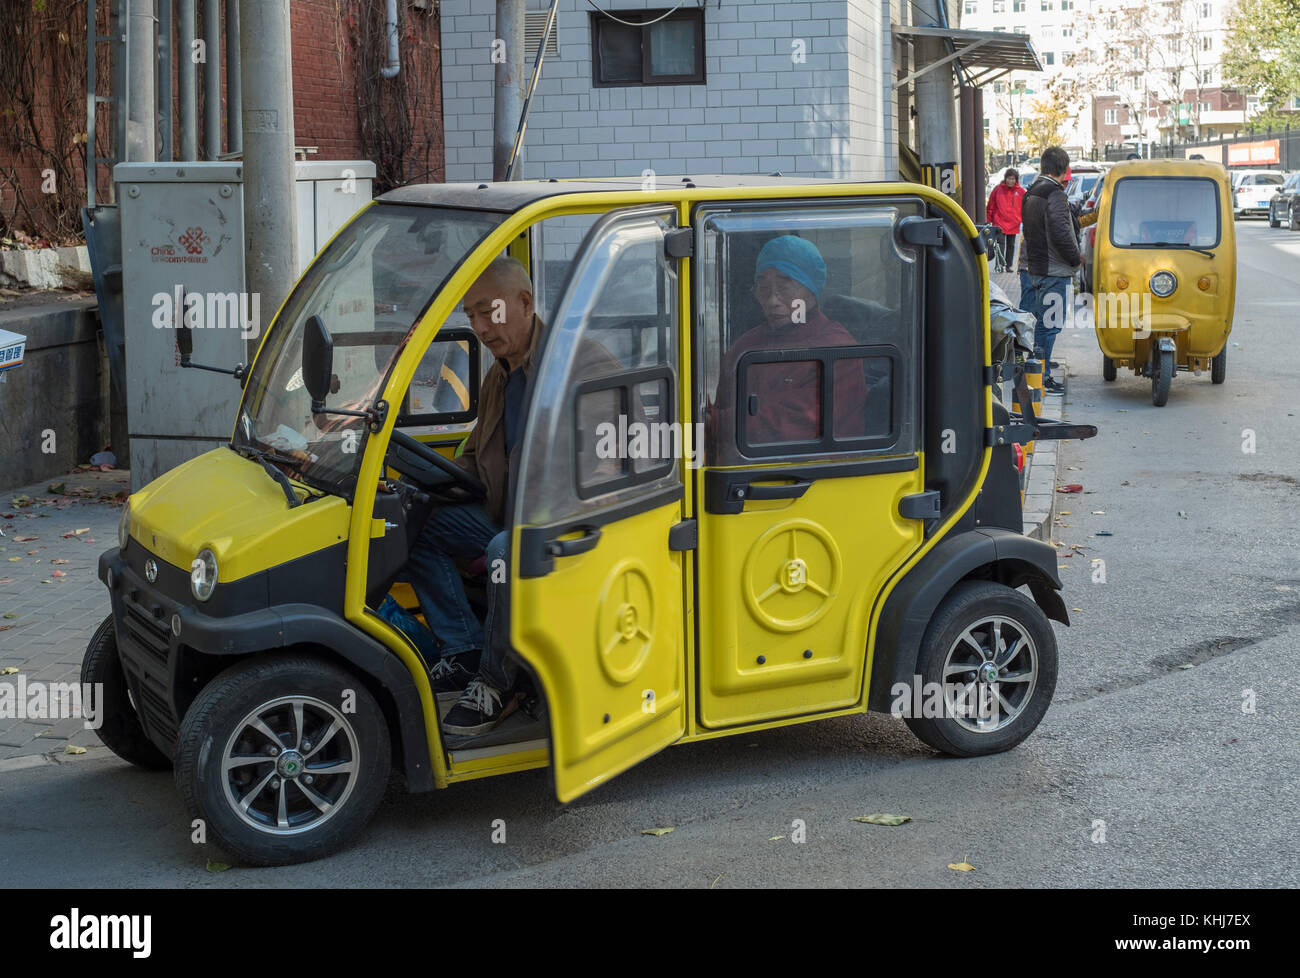 Mini voiture électrique sans permis est vu à Beijing, Chine. Banque D'Images